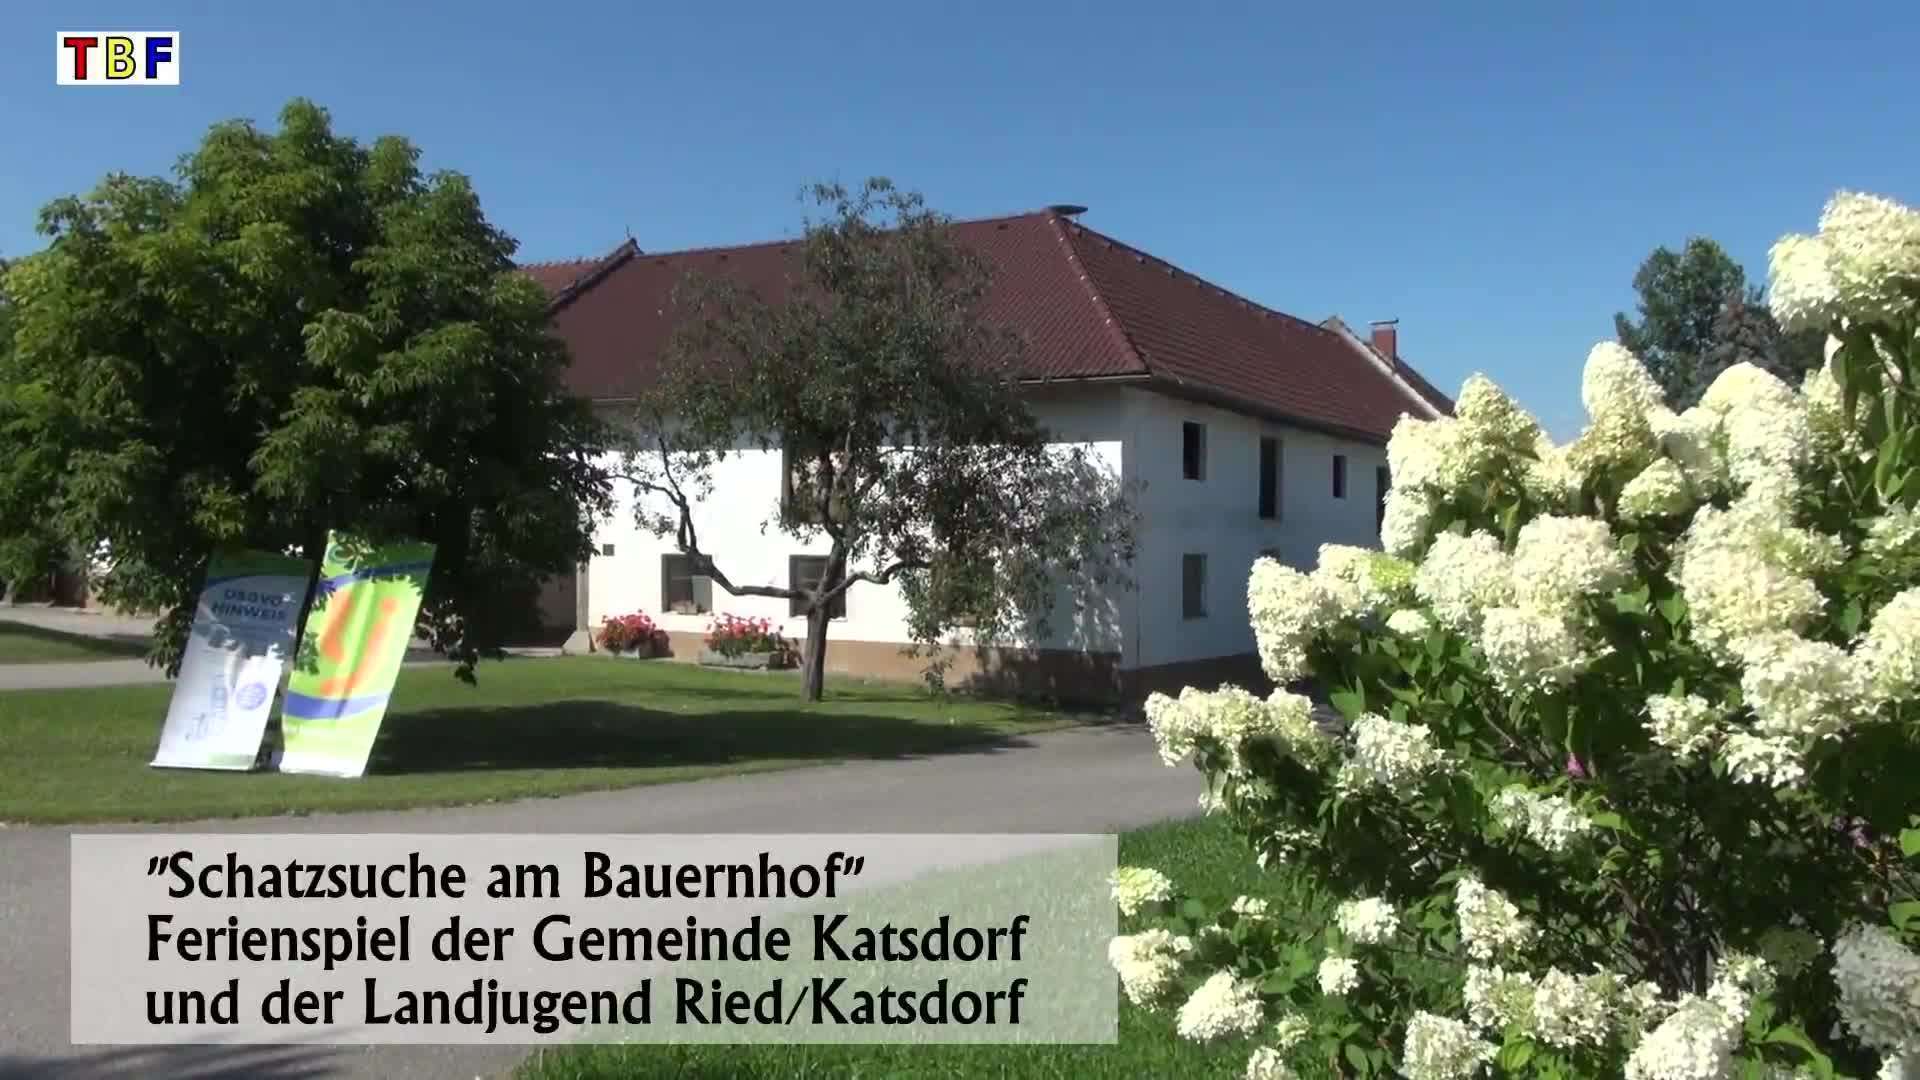 Schatzsuche am Bauernhof in Katsdorf